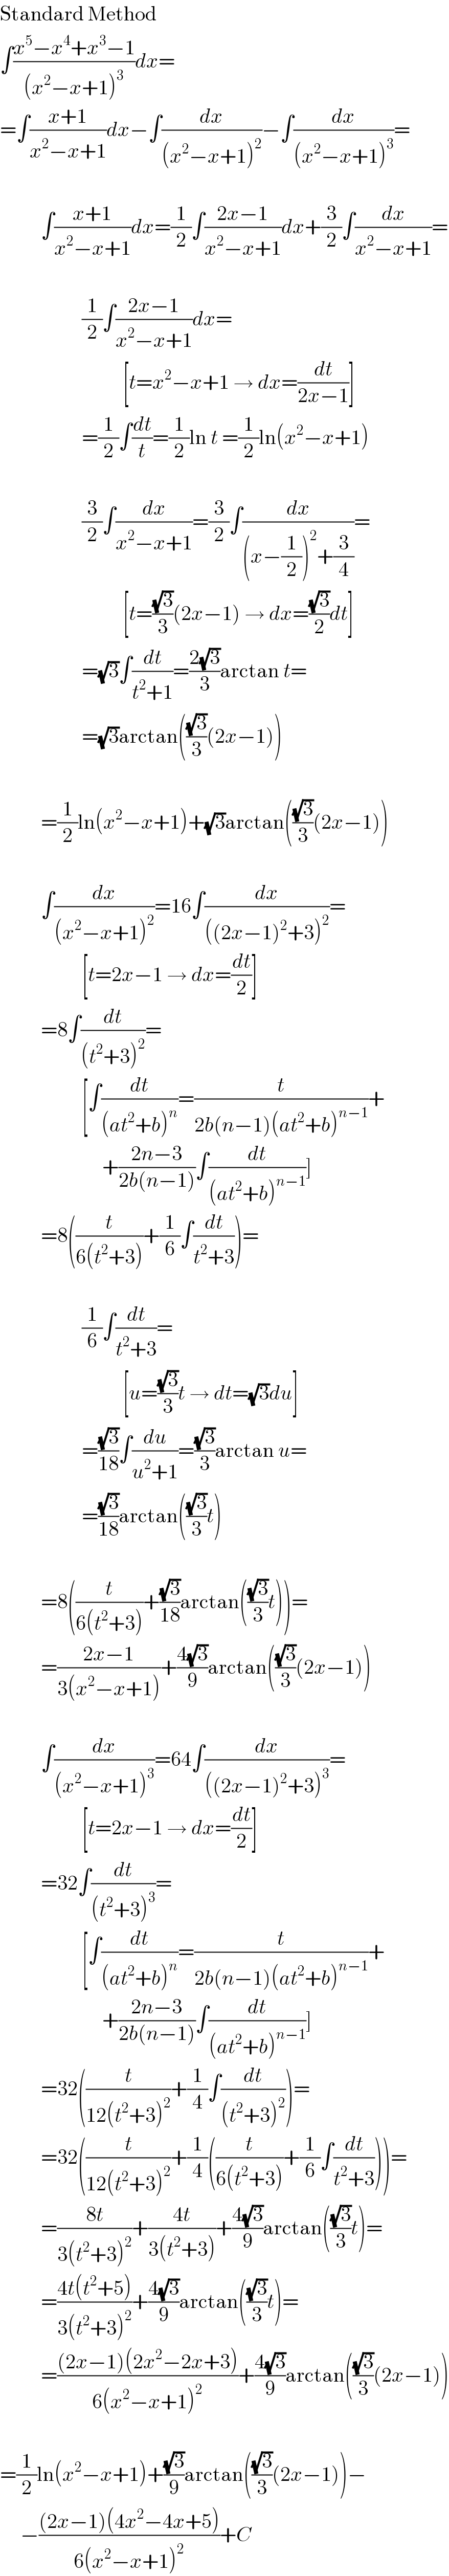 Standard Method  ∫((x^5 −x^4 +x^3 −1)/((x^2 −x+1)^3 ))dx=  =∫((x+1)/(x^2 −x+1))dx−∫(dx/((x^2 −x+1)^2 ))−∫(dx/((x^2 −x+1)^3 ))=              ∫((x+1)/(x^2 −x+1))dx=(1/2)∫((2x−1)/(x^2 −x+1))dx+(3/2)∫(dx/(x^2 −x+1))=                        (1/2)∫((2x−1)/(x^2 −x+1))dx=                                [t=x^2 −x+1 → dx=(dt/(2x−1))]                      =(1/2)∫(dt/t)=(1/2)ln t =(1/2)ln(x^2 −x+1)                        (3/2)∫(dx/(x^2 −x+1))=(3/2)∫(dx/((x−(1/2))^2 +(3/4)))=                                [t=((√3)/3)(2x−1) → dx=((√3)/2)dt]                      =(√3)∫(dt/(t^2 +1))=((2(√3))/3)arctan t=                      =(√3)arctan(((√3)/3)(2x−1))              =(1/2)ln(x^2 −x+1)+(√3)arctan(((√3)/3)(2x−1))              ∫(dx/((x^2 −x+1)^2 ))=16∫(dx/(((2x−1)^2 +3)^2 ))=                      [t=2x−1 → dx=(dt/2)]            =8∫(dt/((t^2 +3)^2 ))=                      [∫(dt/((at^2 +b)^n ))=(t/(2b(n−1)(at^2 +b)^(n−1) ))+                           +((2n−3)/(2b(n−1)))∫(dt/((at^2 +b)^(n−1) ))]            =8((t/(6(t^2 +3)))+(1/6)∫(dt/(t^2 +3)))=                        (1/6)∫(dt/(t^2 +3))=                                [u=((√3)/3)t → dt=(√3)du]                      =((√3)/(18))∫(du/(u^2 +1))=((√3)/3)arctan u=                      =((√3)/(18))arctan(((√3)/3)t)              =8((t/(6(t^2 +3)))+((√3)/(18))arctan(((√3)/3)t))=            =((2x−1)/(3(x^2 −x+1)))+((4(√3))/9)arctan(((√3)/3)(2x−1))              ∫(dx/((x^2 −x+1)^3 ))=64∫(dx/(((2x−1)^2 +3)^3 ))=                      [t=2x−1 → dx=(dt/2)]            =32∫(dt/((t^2 +3)^3 ))=                      [∫(dt/((at^2 +b)^n ))=(t/(2b(n−1)(at^2 +b)^(n−1) ))+                           +((2n−3)/(2b(n−1)))∫(dt/((at^2 +b)^(n−1) ))]            =32((t/(12(t^2 +3)^2 ))+(1/4)∫(dt/((t^2 +3)^2 )))=            =32((t/(12(t^2 +3)^2 ))+(1/4)((t/(6(t^2 +3)))+(1/6)∫(dt/(t^2 +3))))=            =((8t)/(3(t^2 +3)^2 ))+((4t)/(3(t^2 +3)))+((4(√3))/9)arctan(((√3)/3)t)=            =((4t(t^2 +5))/(3(t^2 +3)^2 ))+((4(√3))/9)arctan(((√3)/3)t)=            =(((2x−1)(2x^2 −2x+3))/(6(x^2 −x+1)^2 ))+((4(√3))/9)arctan(((√3)/3)(2x−1))    =(1/2)ln(x^2 −x+1)+((√3)/9)arctan(((√3)/3)(2x−1))−       −(((2x−1)(4x^2 −4x+5))/(6(x^2 −x+1)^2 ))+C  